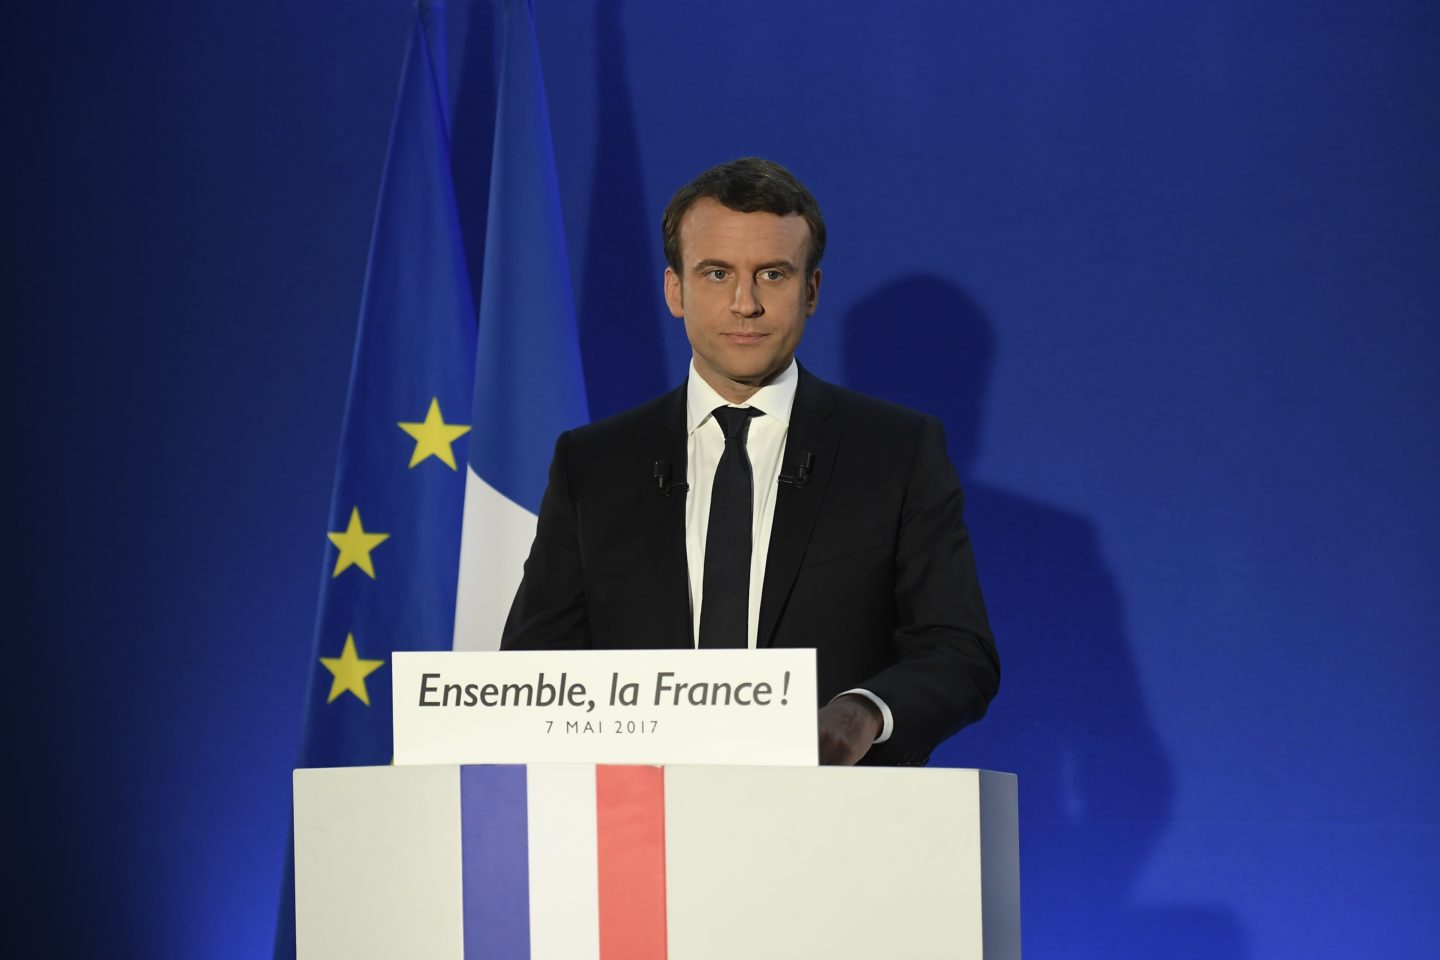 Emmanuel Macron vence Marine Le Pen na França, indicam projeções